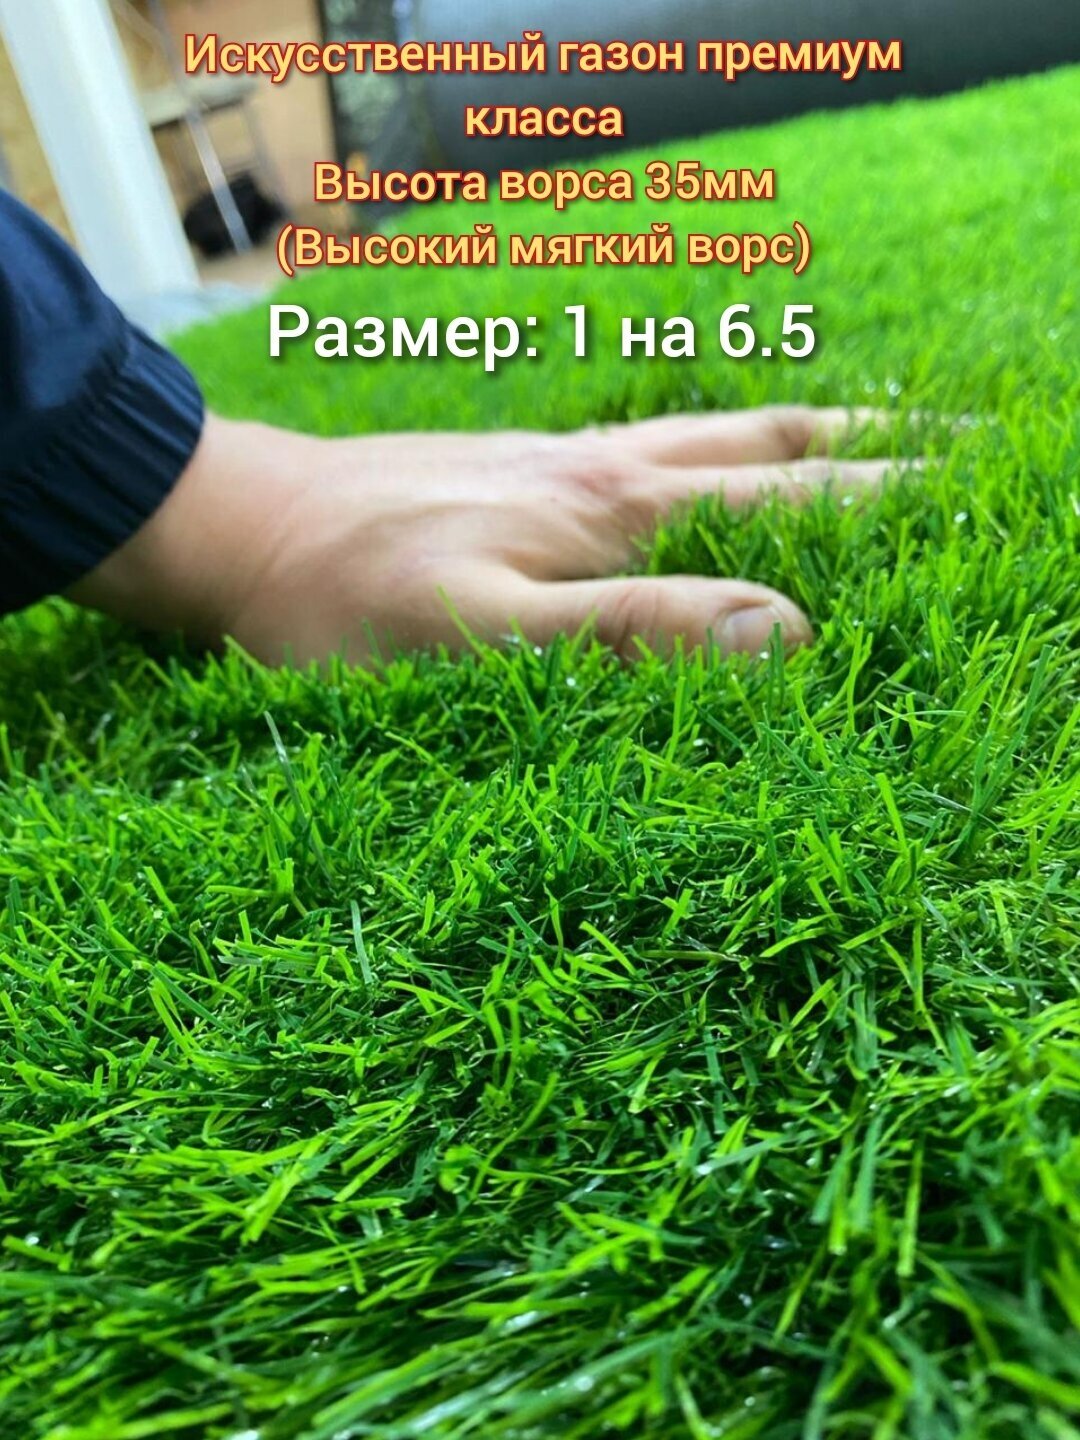 Газон искусственный 1 на 6.5 (высота ворса 35мм) искусственная трава с высоким мягким ворсом, имитация настоящего газона - фотография № 1